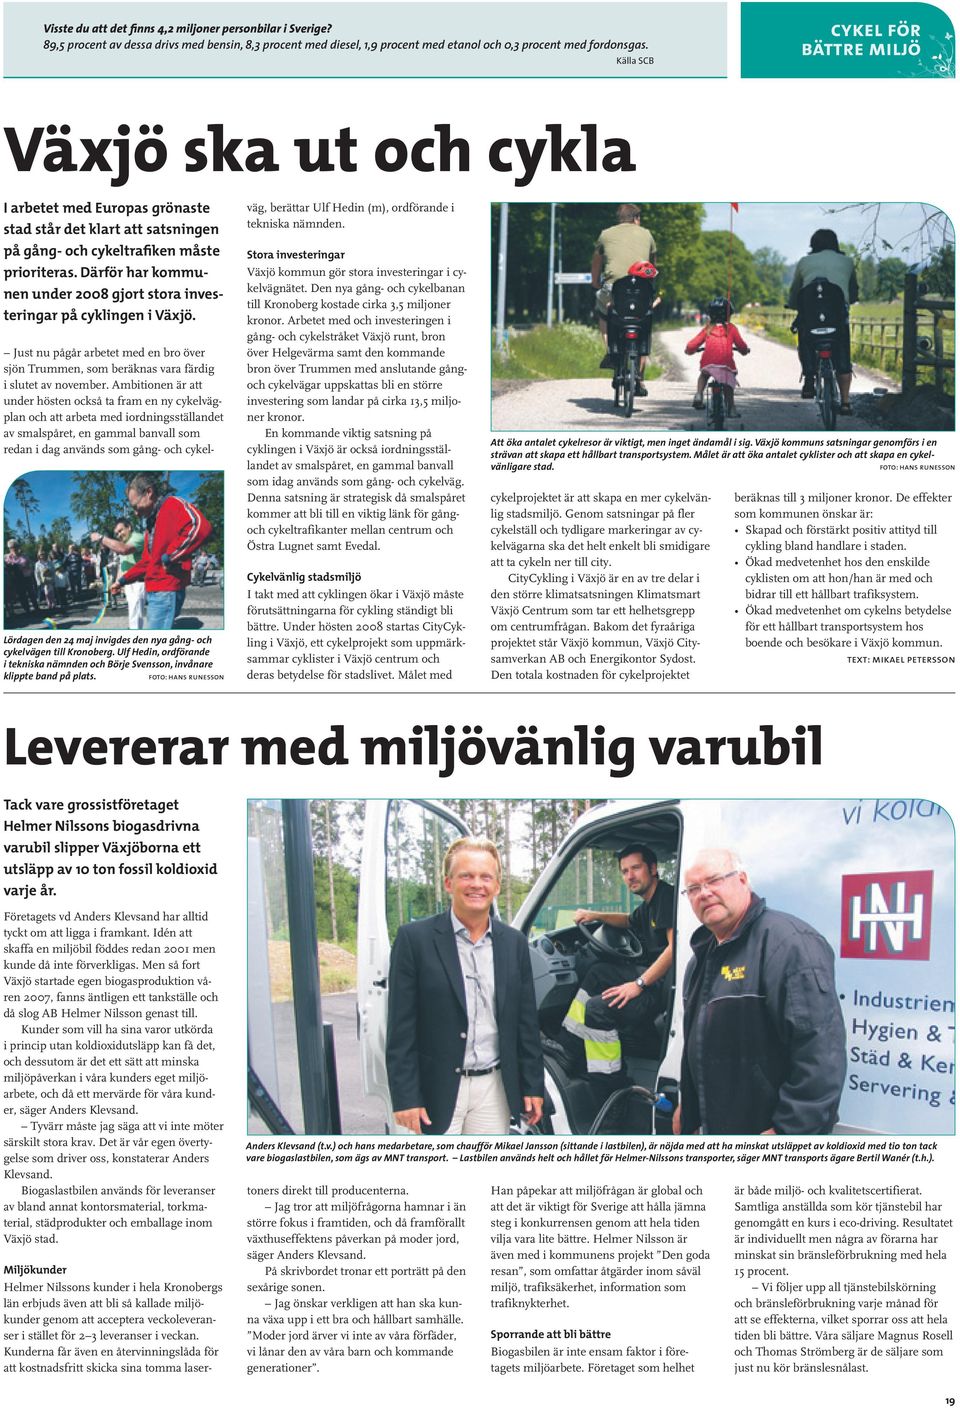 Därför har kommunen under 2008 gjort stora investeringar på cyklingen i Växjö. Lördagen den 24 maj invigdes den nya gång- och cykelvägen till Kronoberg.